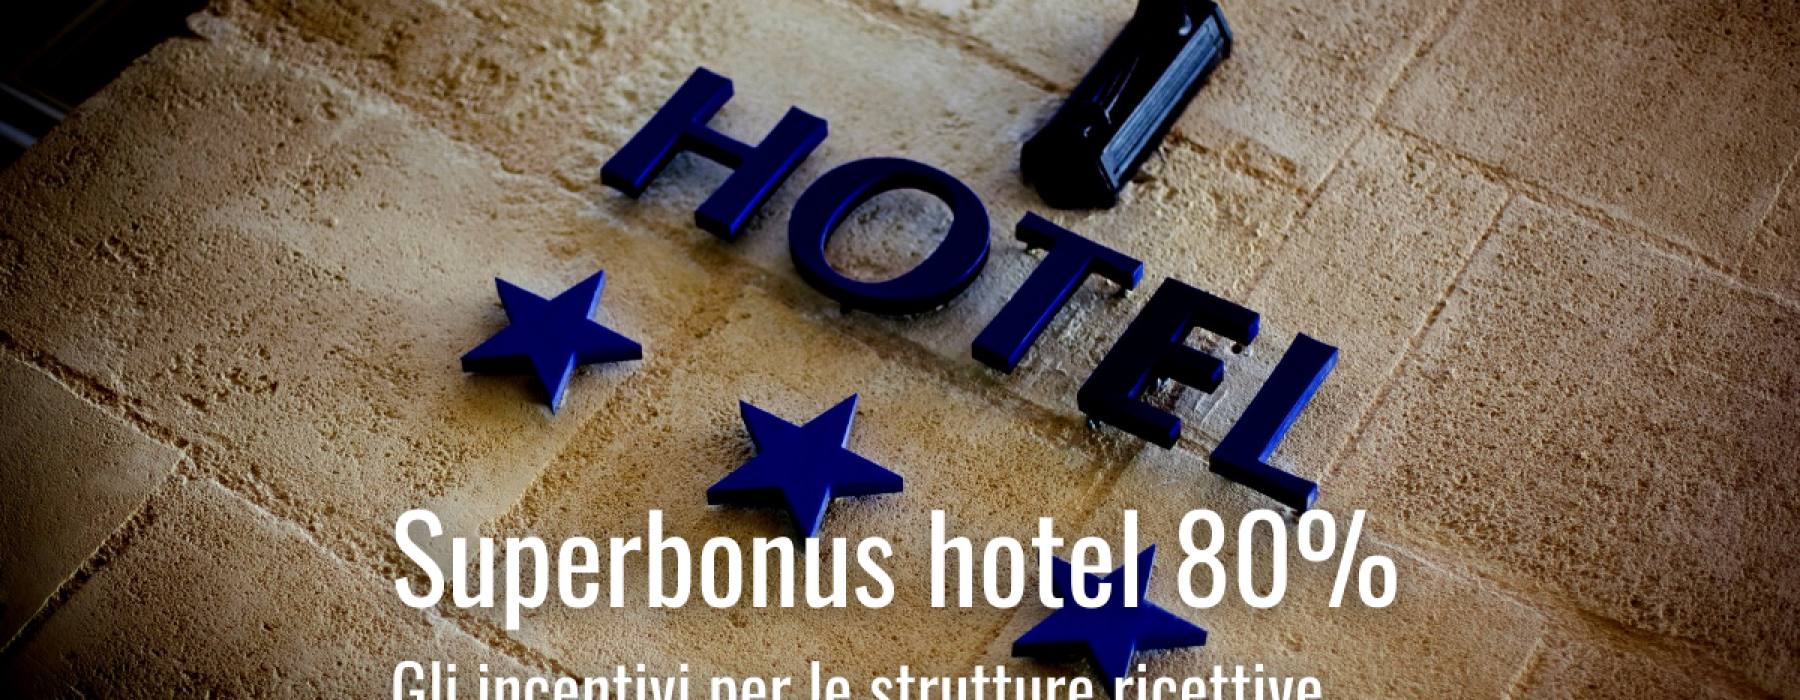 superbonus hotel